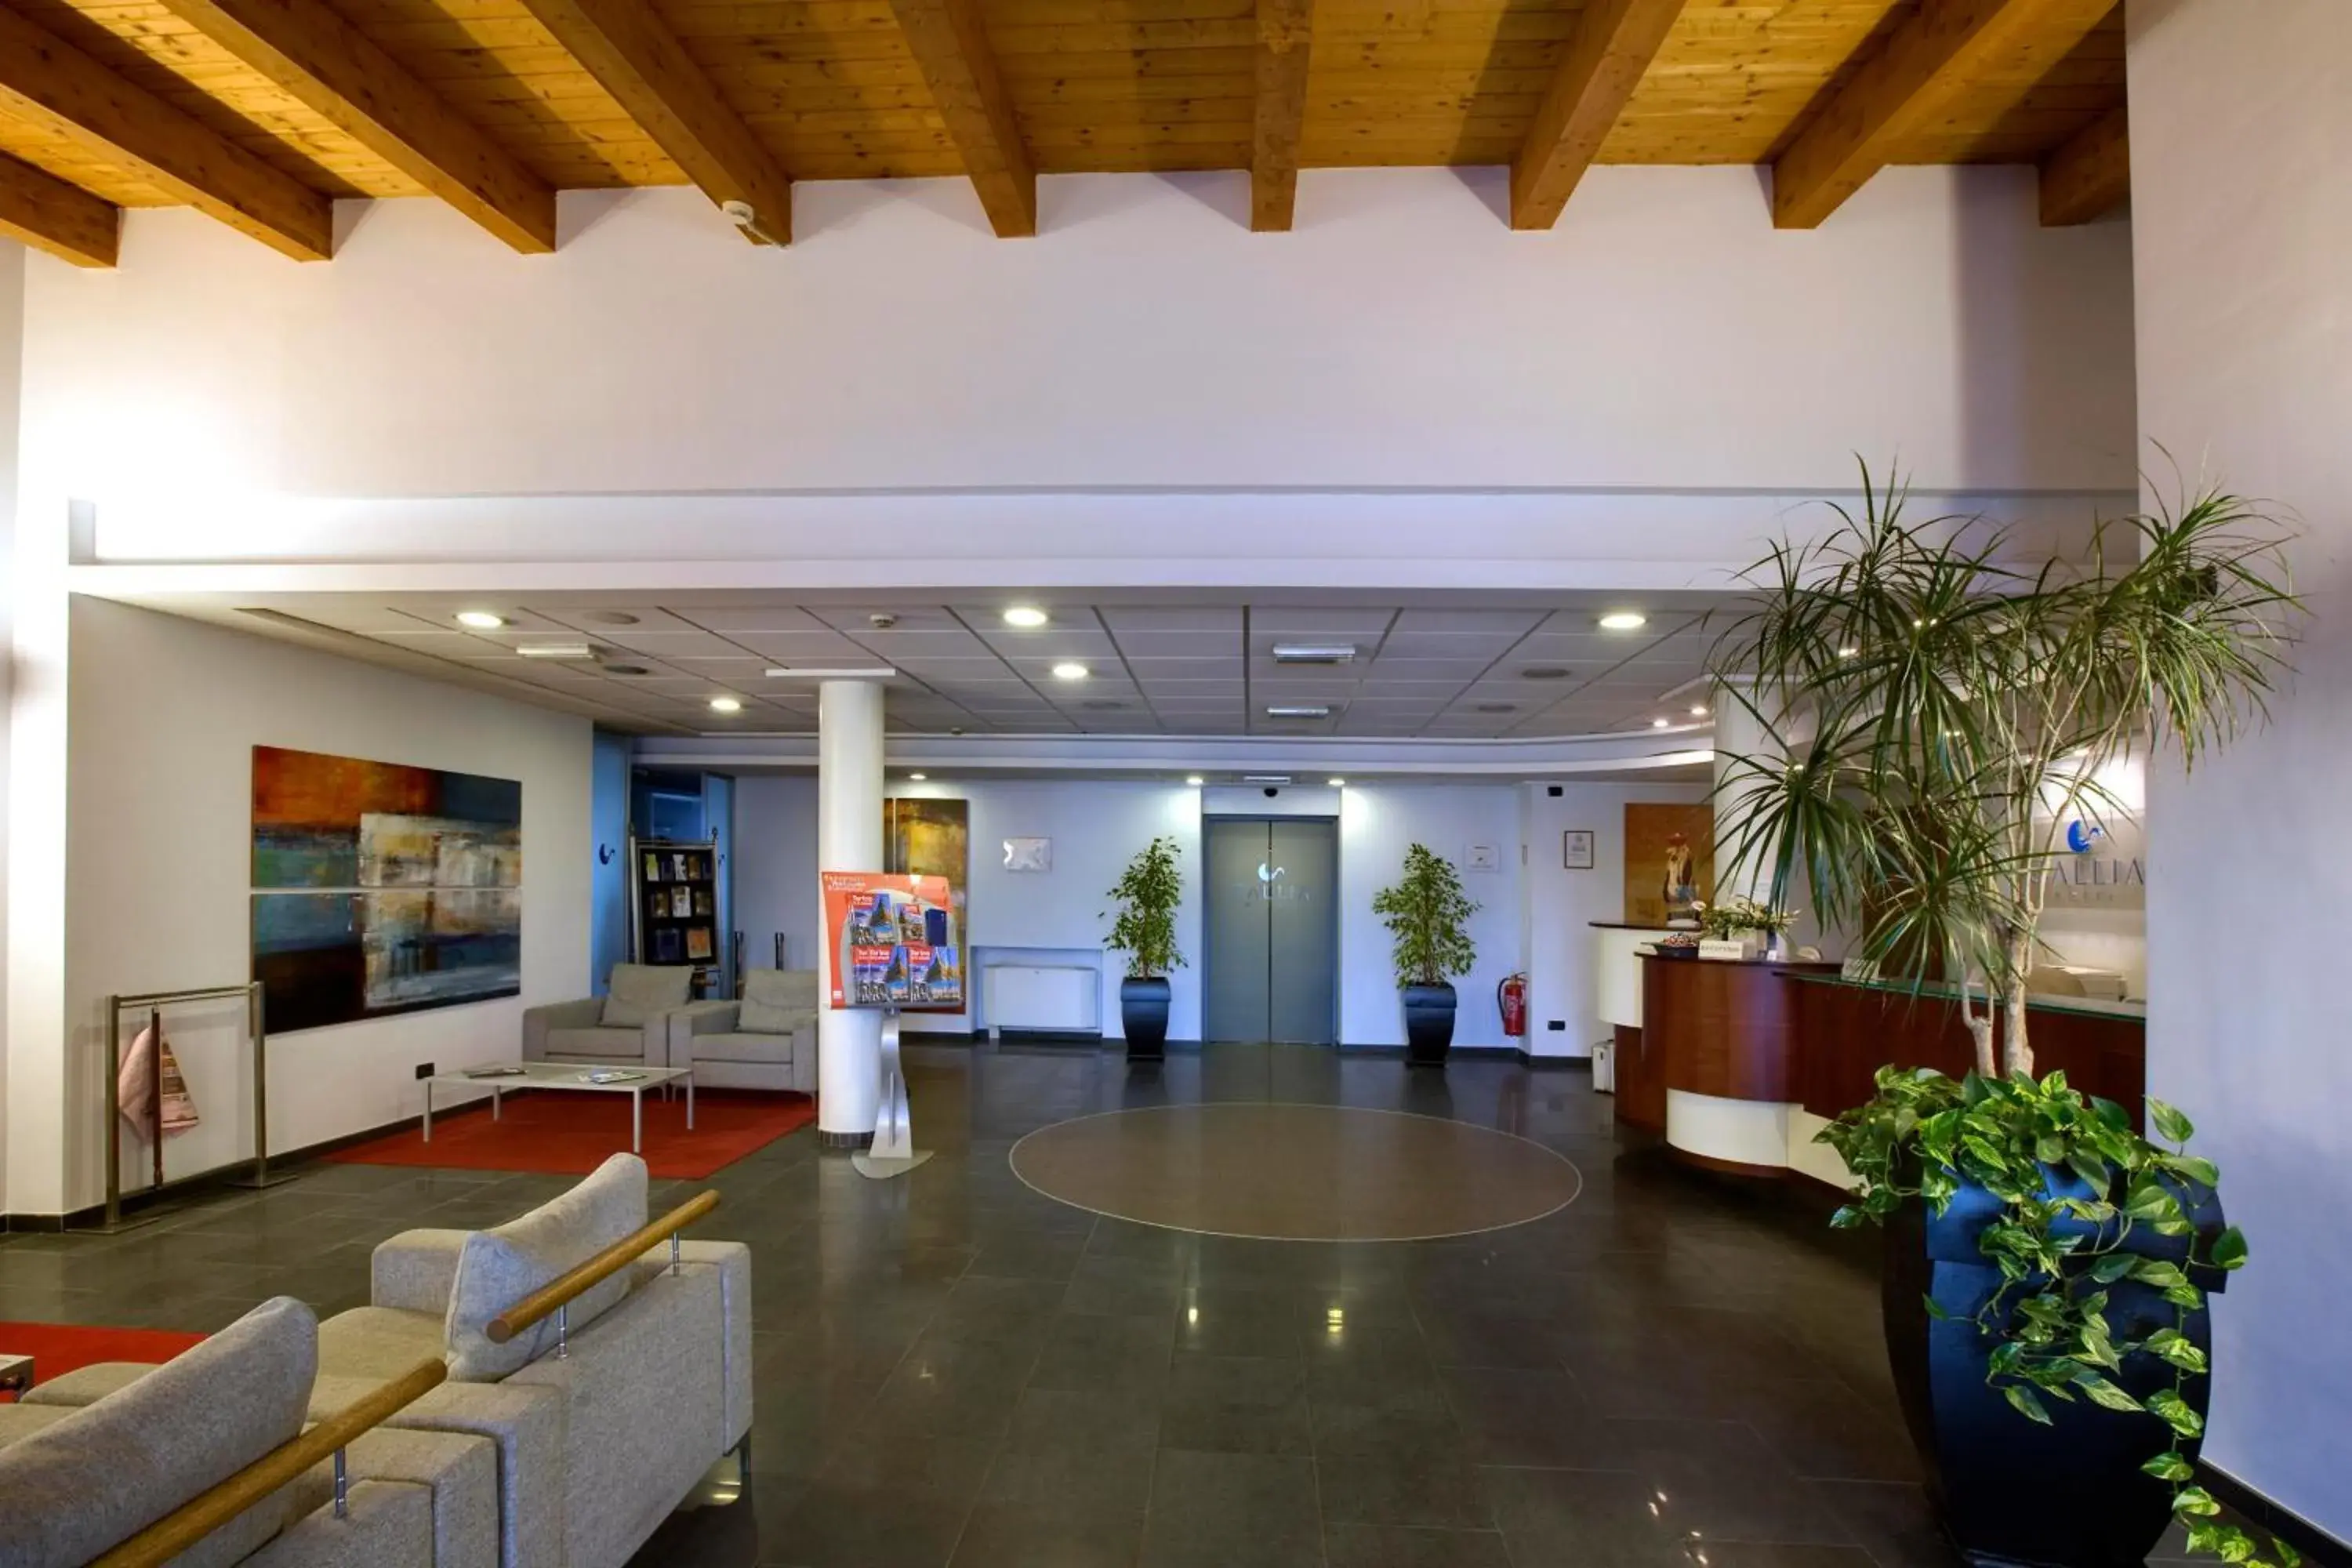 Lobby or reception, Lobby/Reception in Hotel Gallia